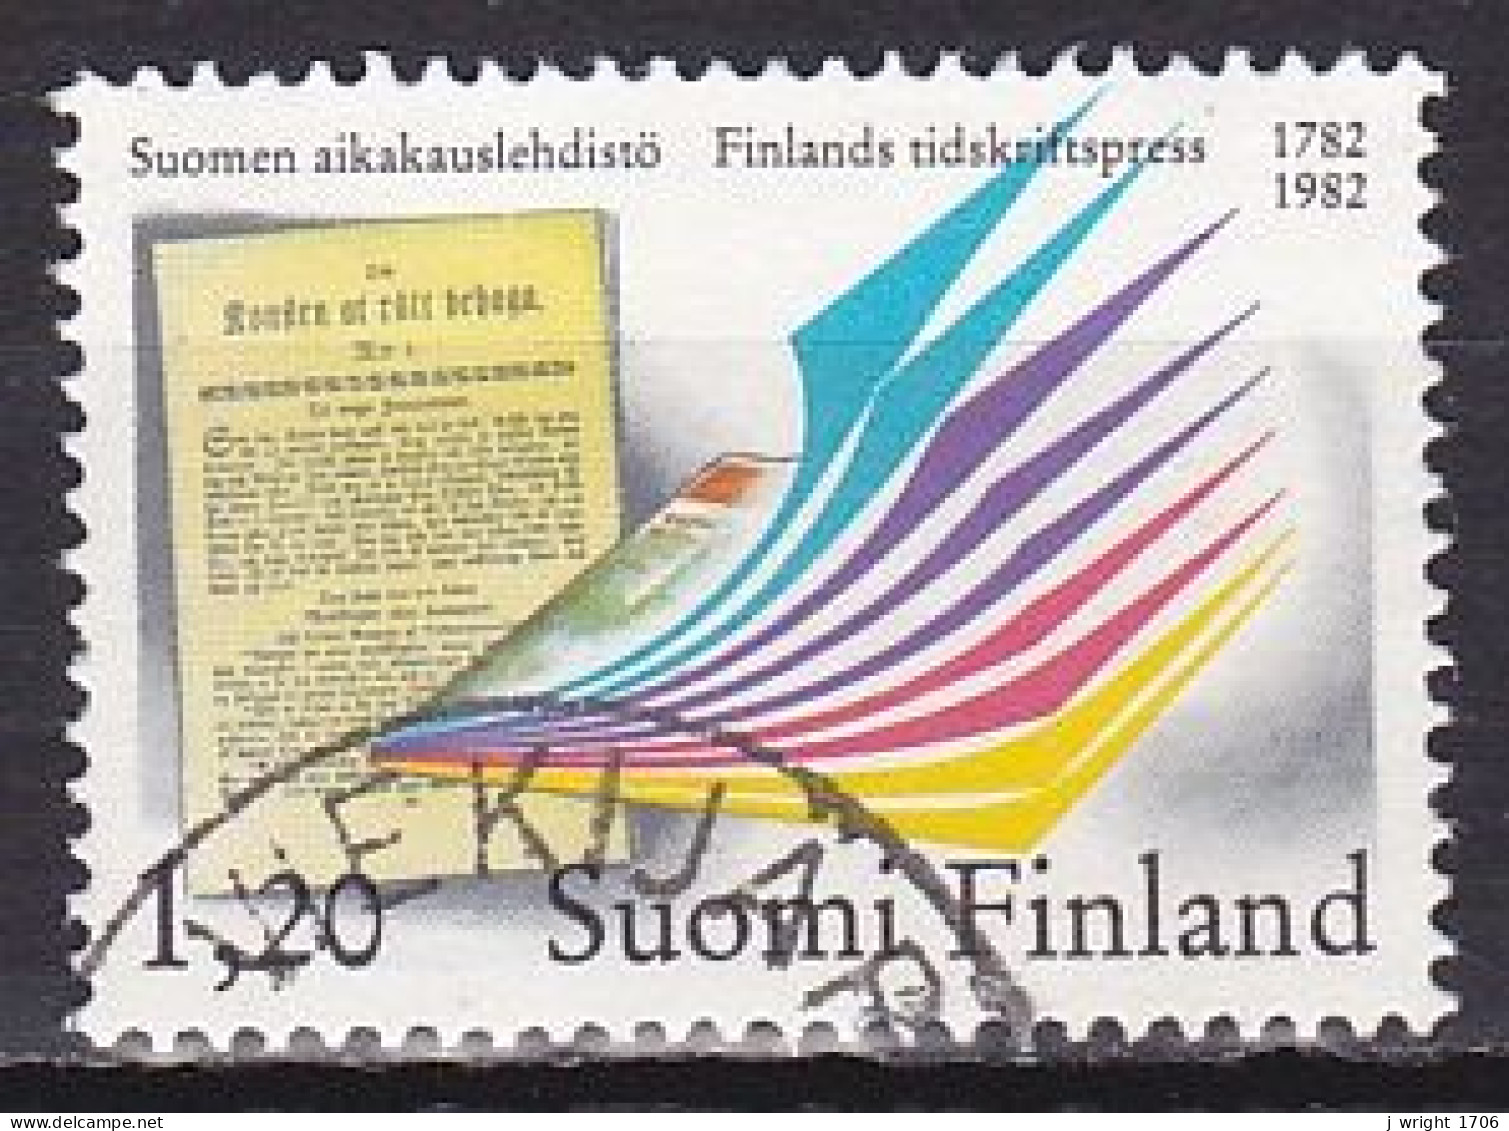 Finland, 1982, Finnish Periodicals Bicentenary, 1.20mk, USED - Gebraucht